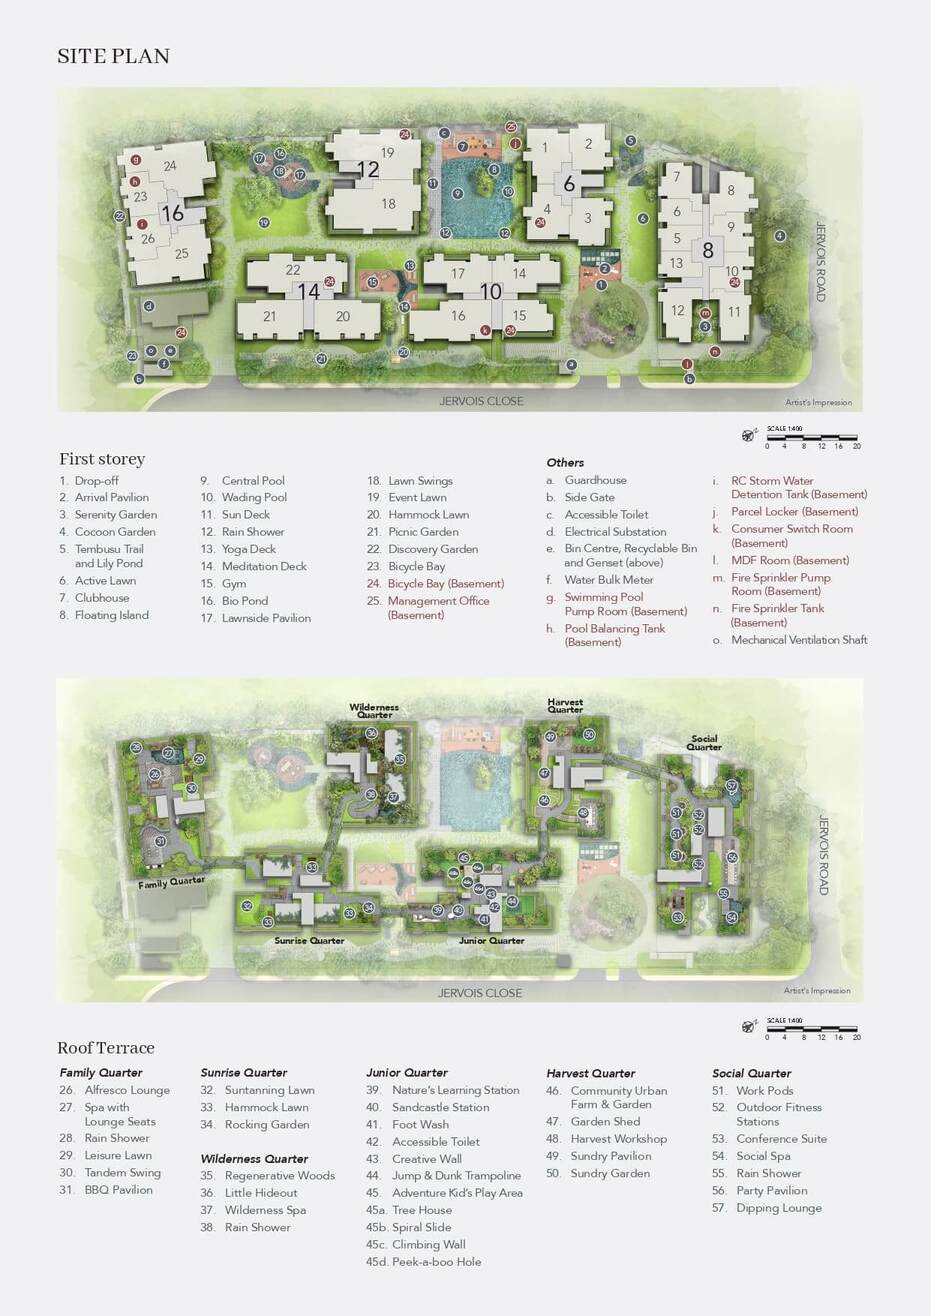 sp-jervois-mansion-site-plan.jpg